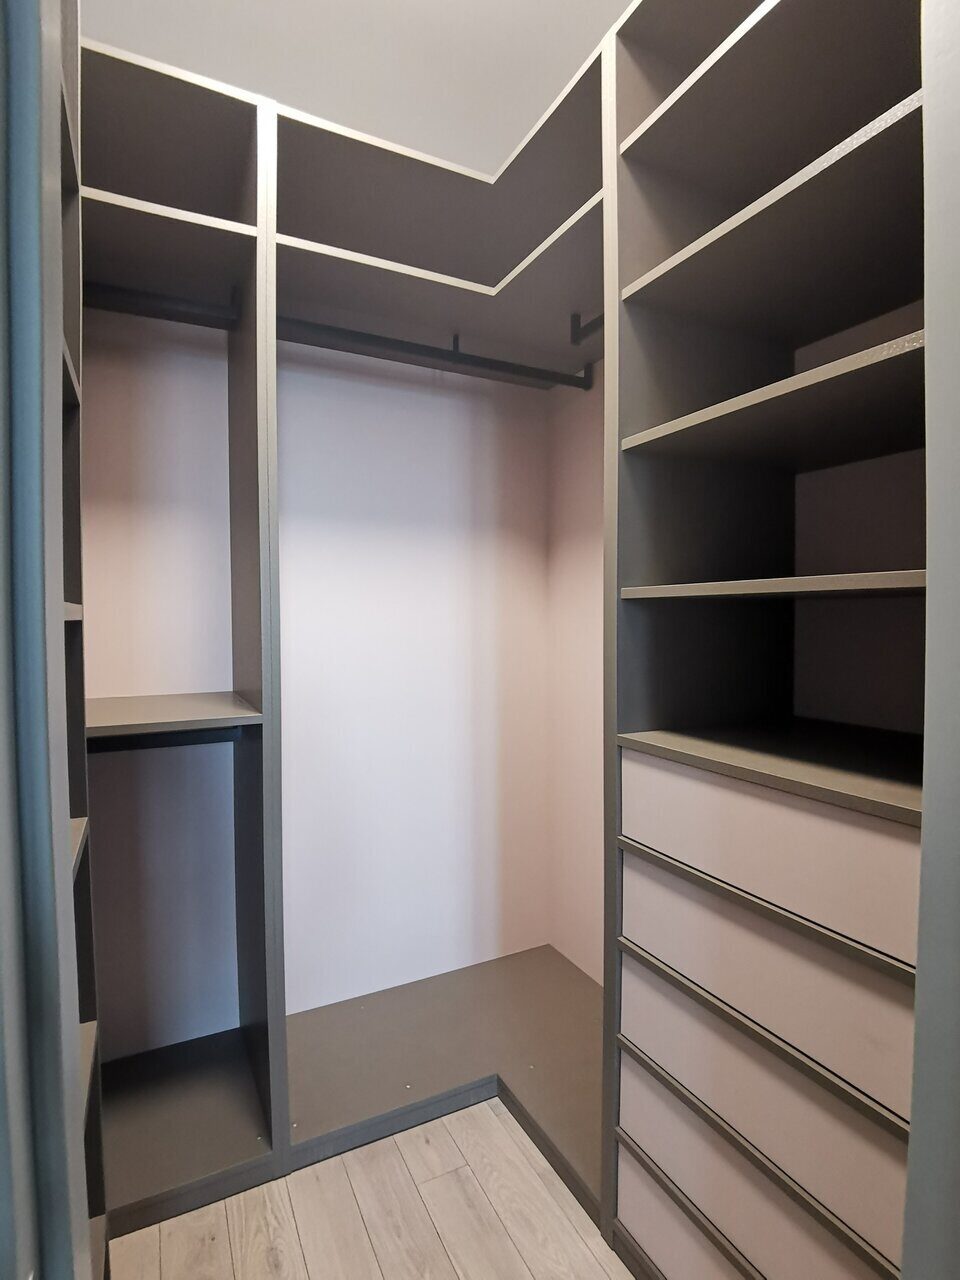 Создание проекта и дизайна гардеробной комнаты из кладовки: +фото и видео